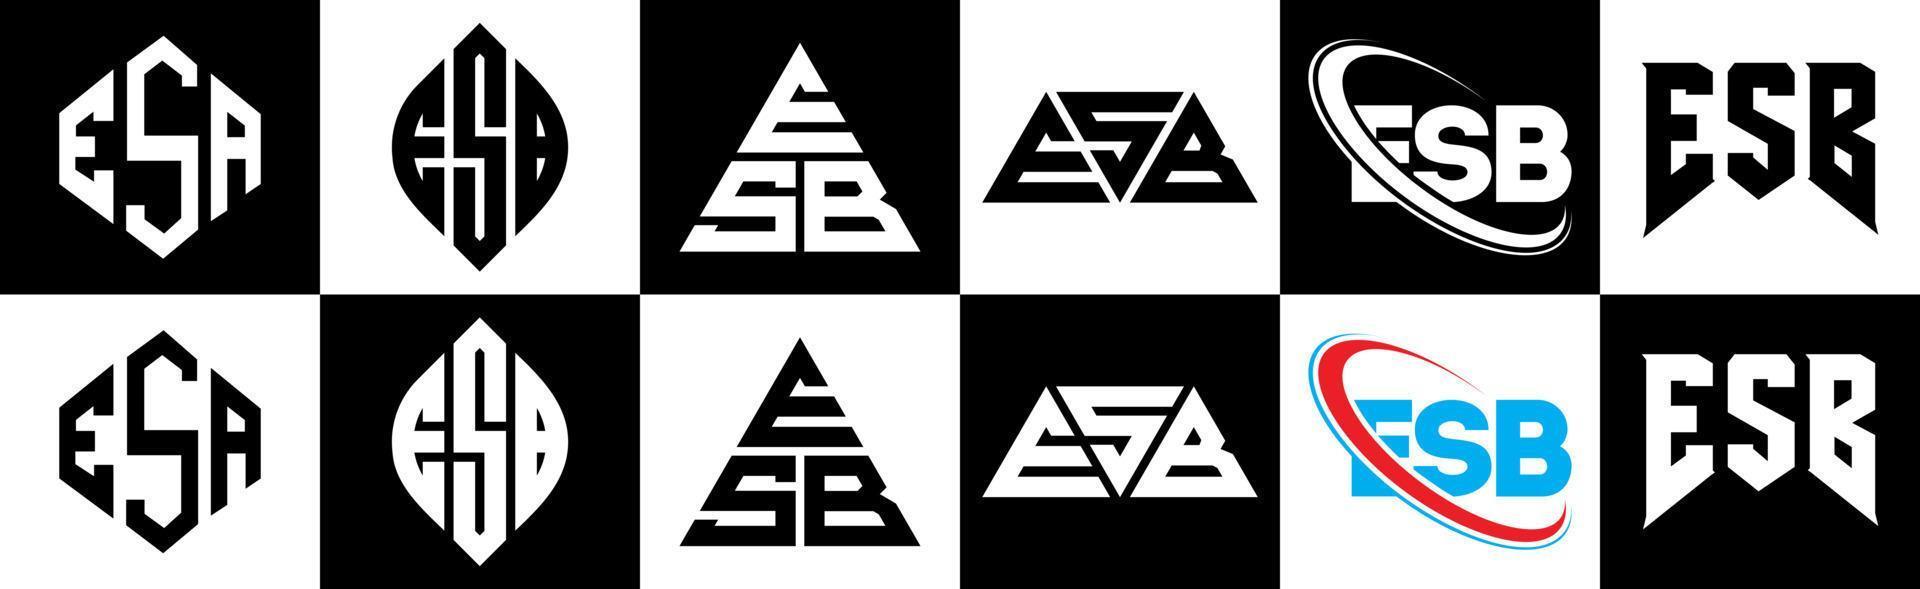 esb brief logo ontwerp in zes stijl. esb veelhoek, cirkel, driehoek, zeshoek, vlak en gemakkelijk stijl met zwart en wit kleur variatie brief logo reeks in een tekengebied. esb minimalistische en klassiek logo vector